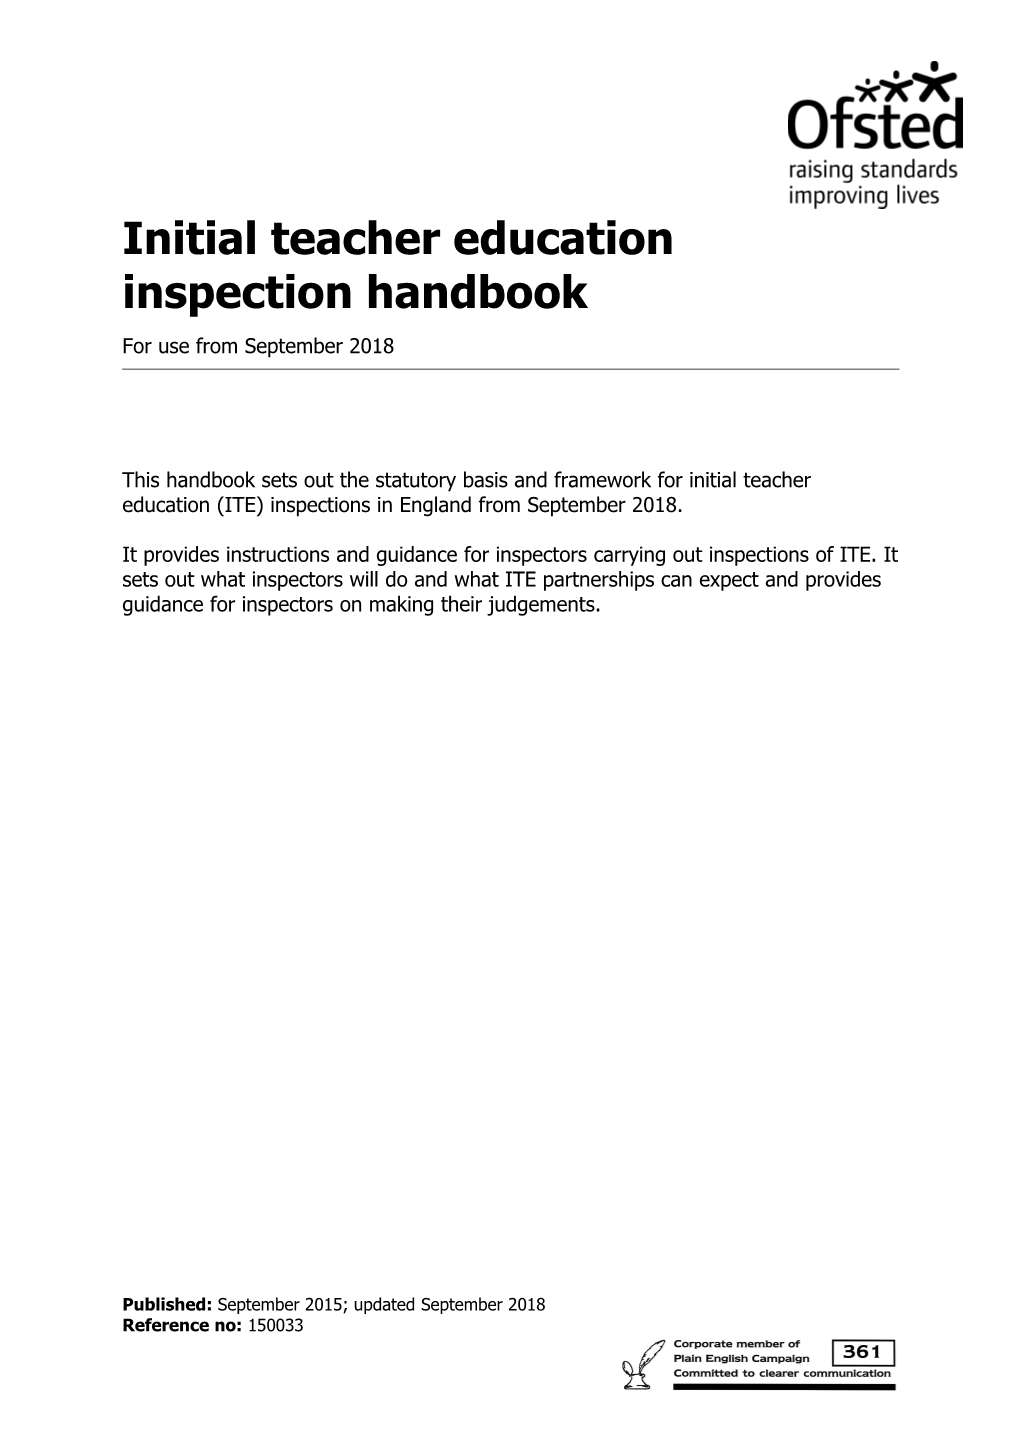 Initial Teacher Education: Inspection Handbook